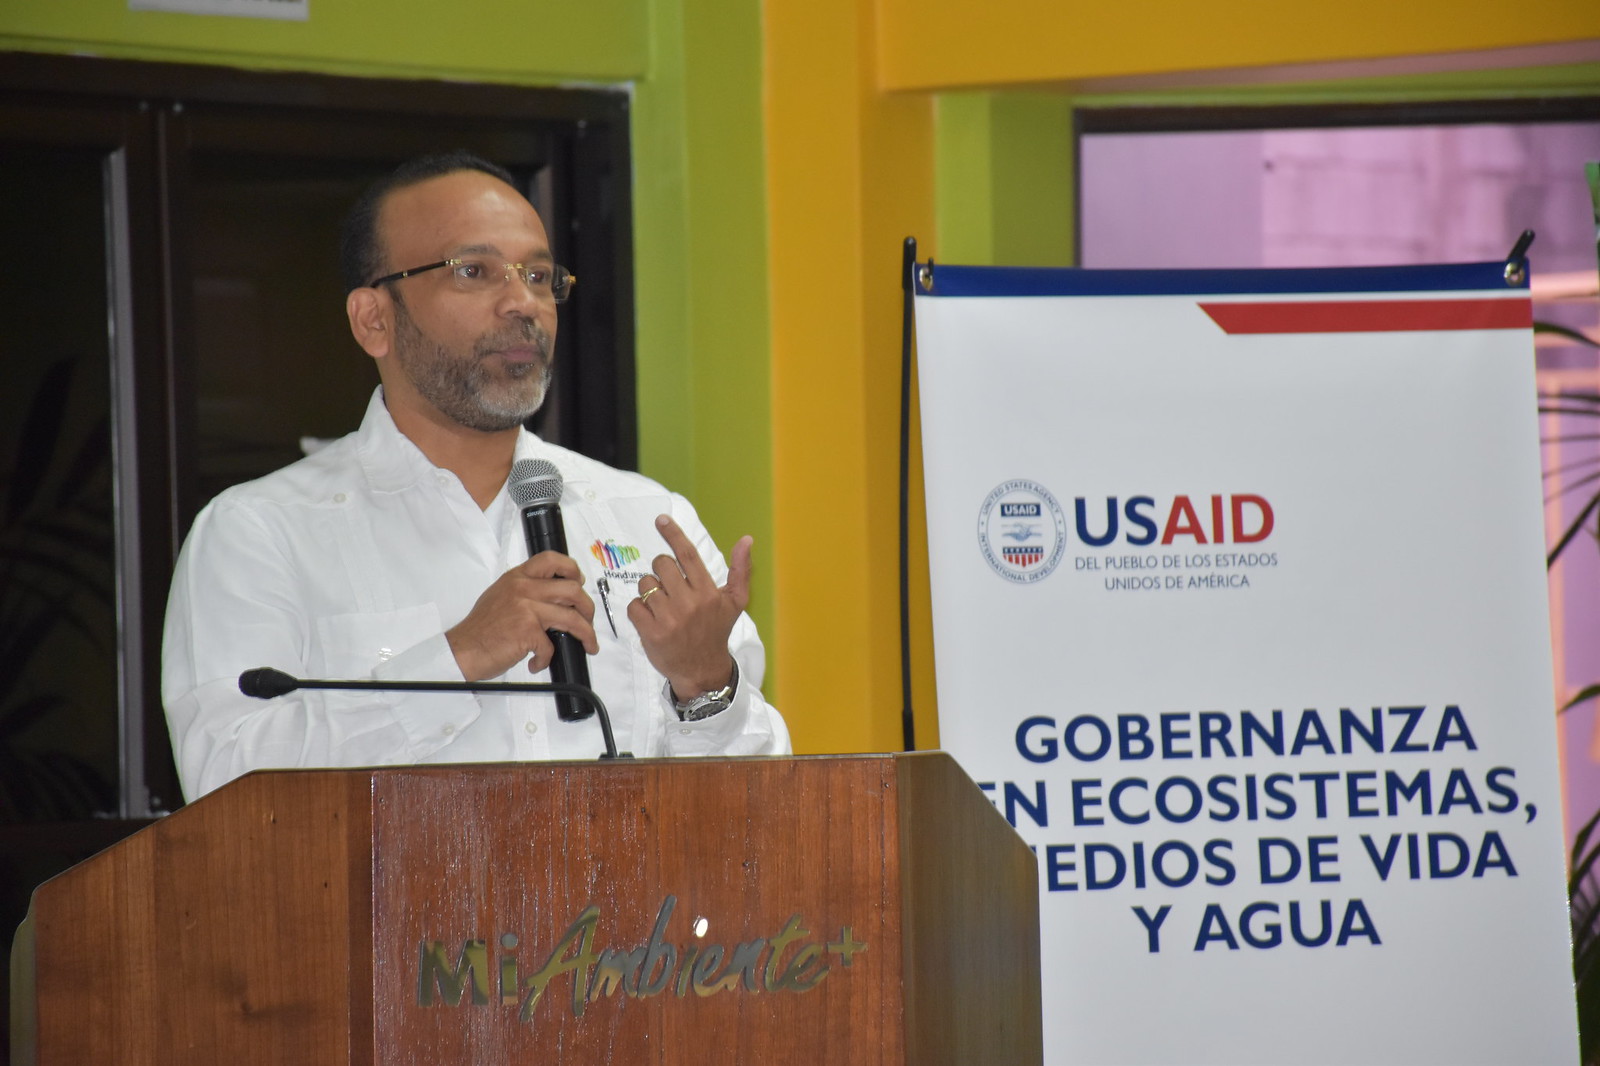 Socialización de iniciativas y alcances de la herramienta de monitoreo de coberturas Terra-i Honduras, 1 y 2 de Febrero